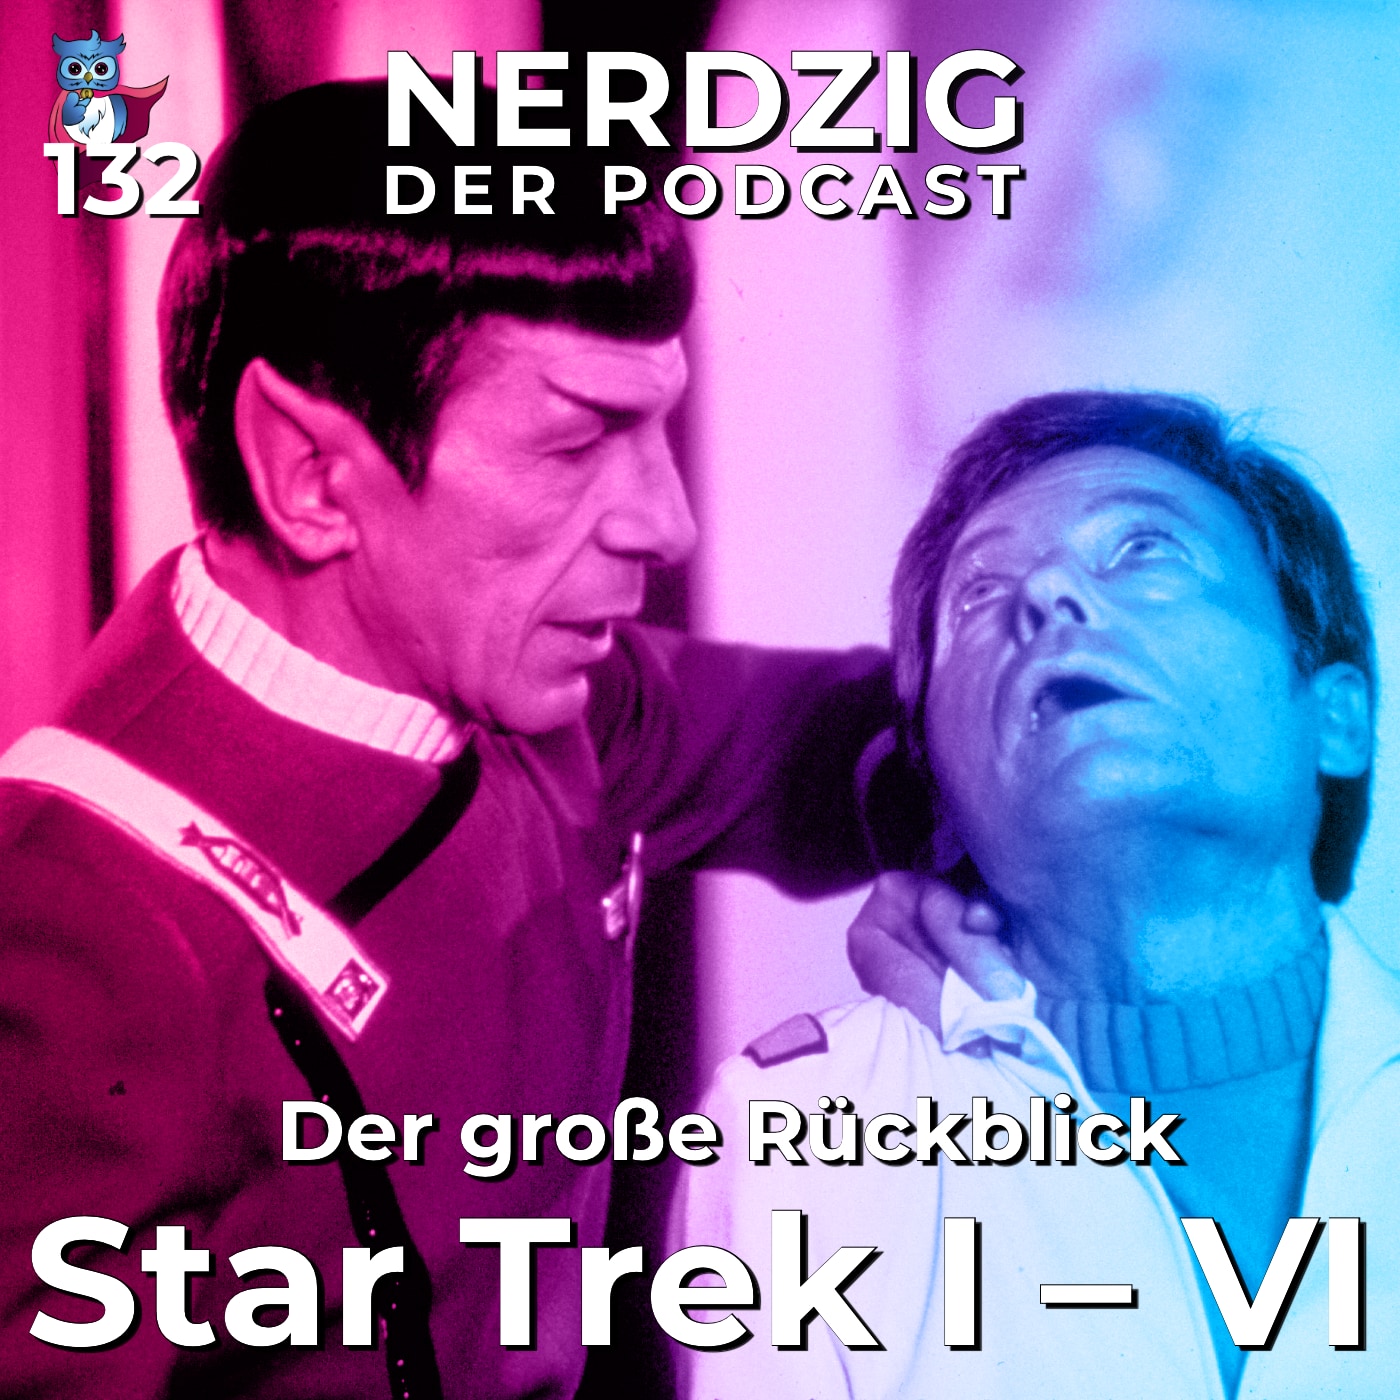 Nerdzig - Der Podcast #132 – Star Trek I - VI: Der große Rückblick auf die Kinofilme der Originalcrew